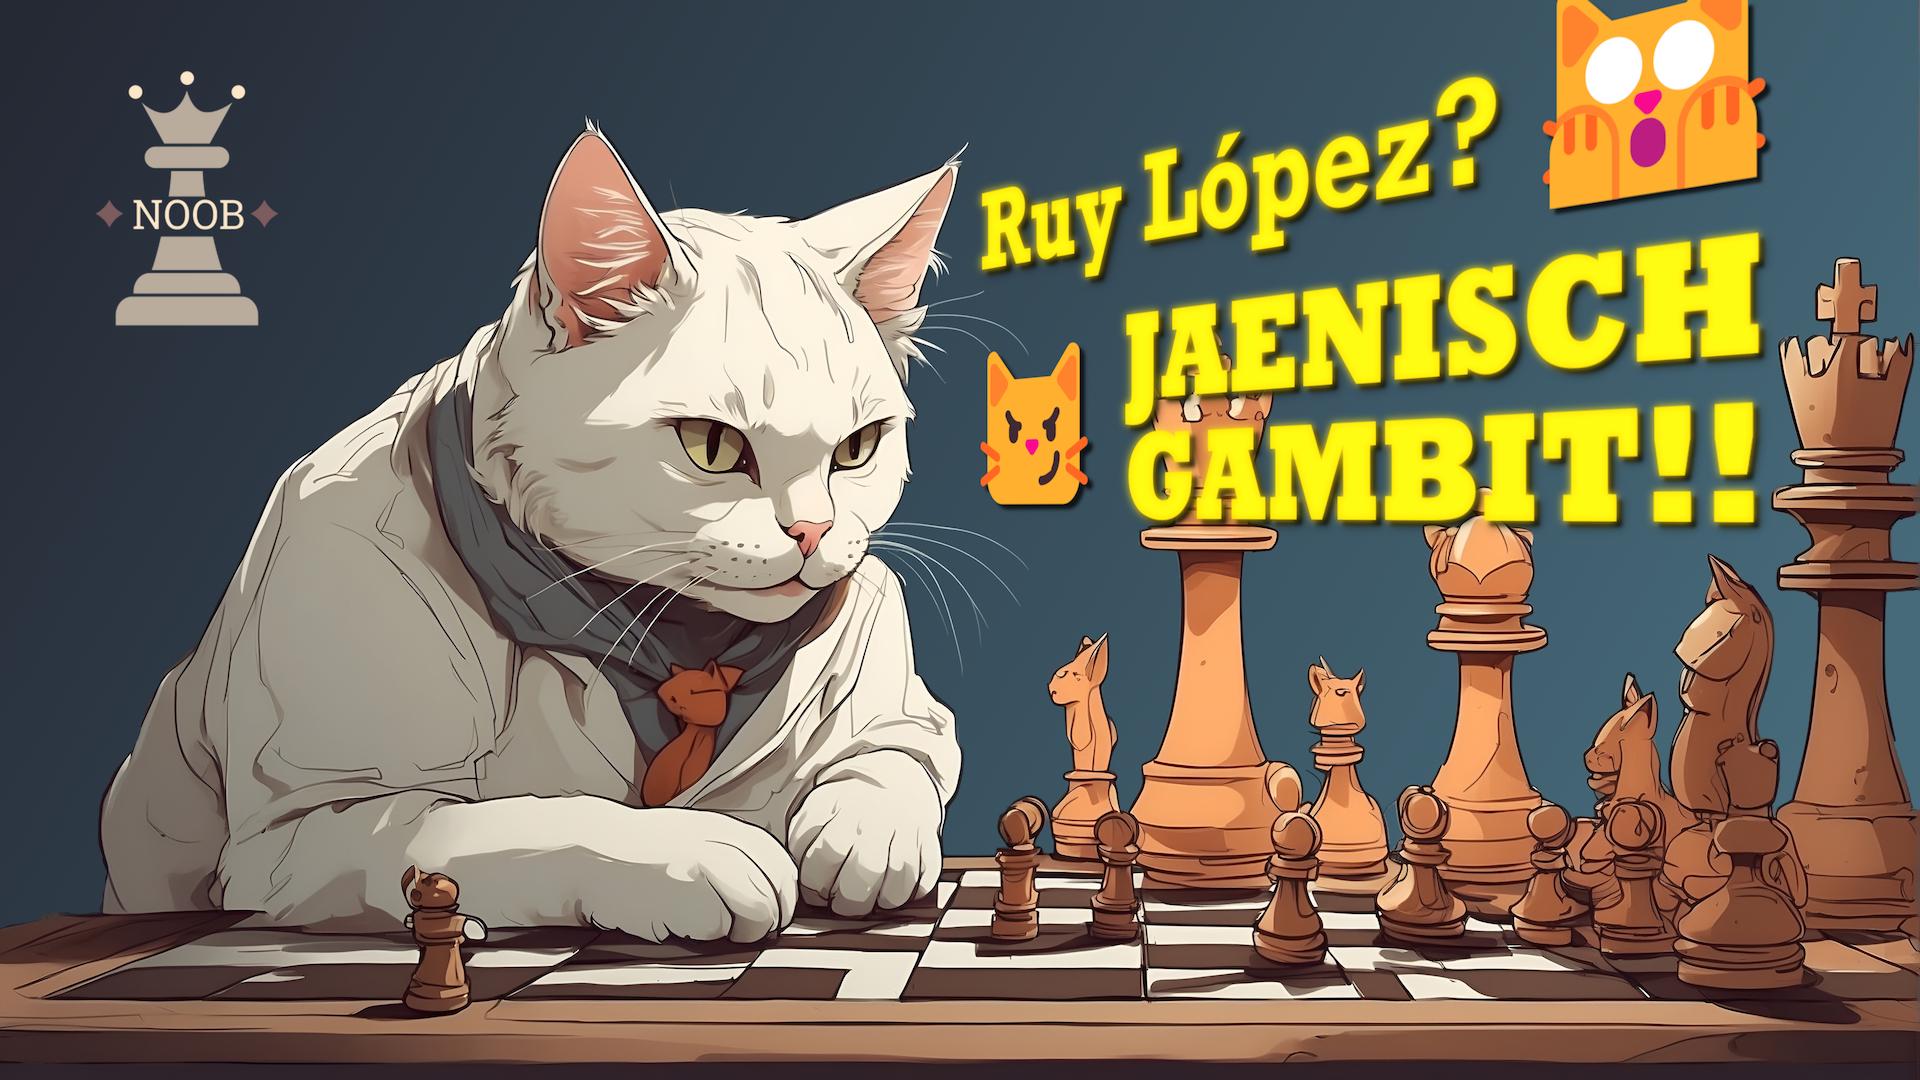 Jaenisch Gambit destroys the Ruy Lopez Opening! – Adventures of